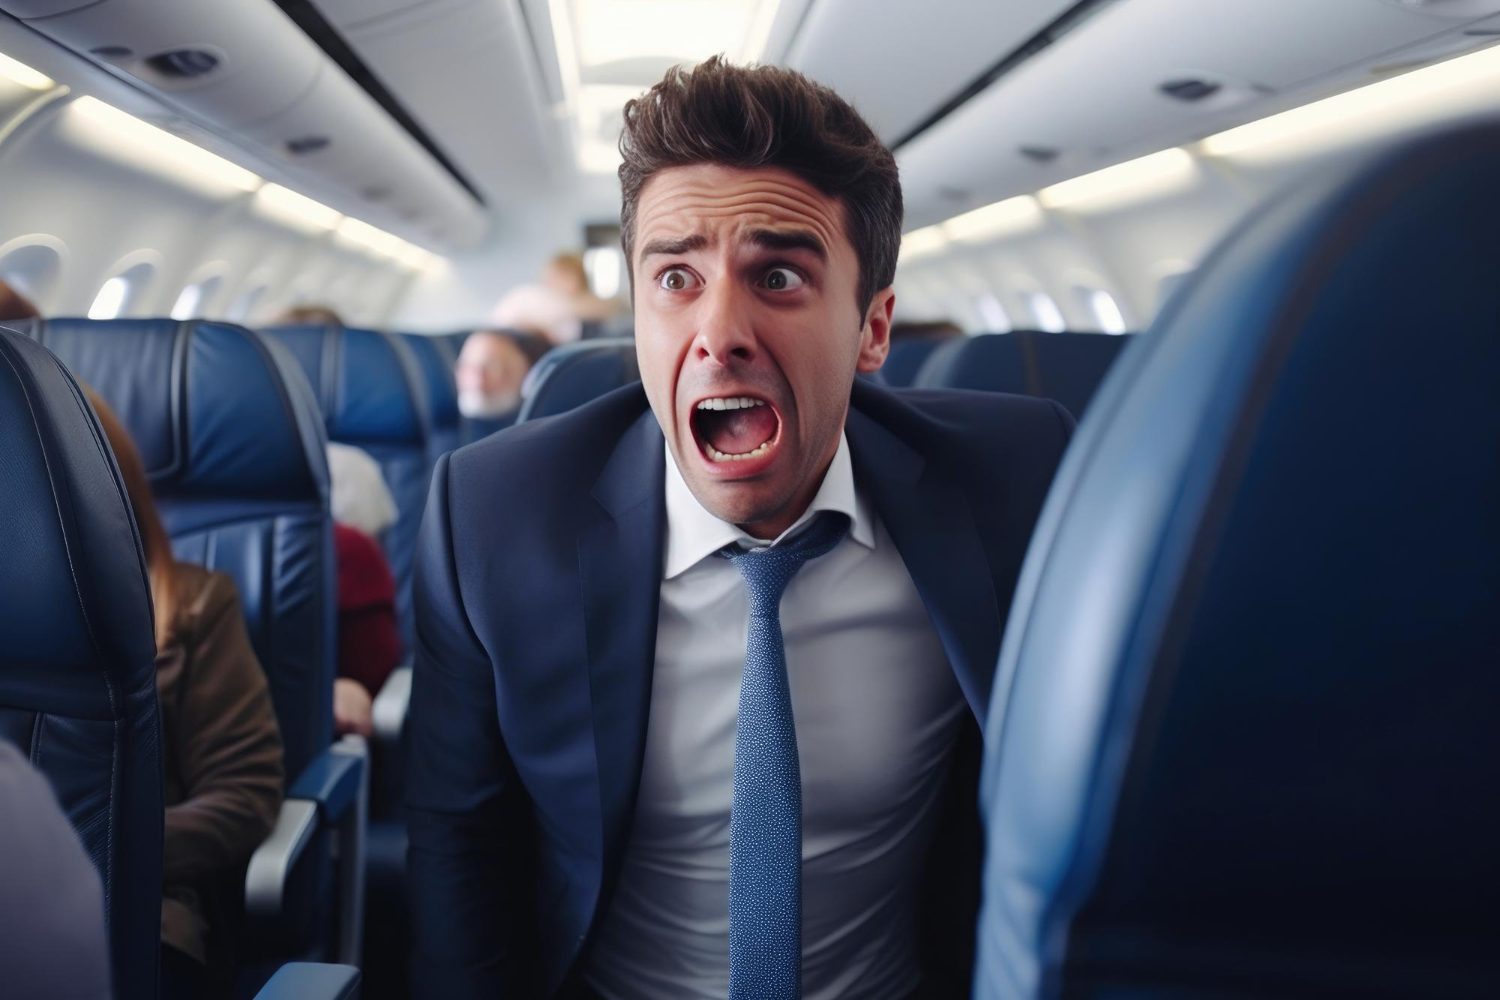 Călătorești pentru prima dată cu avionul? Descoperă câteva sfaturi pentru a-ți face experiența mult mai plăcută!